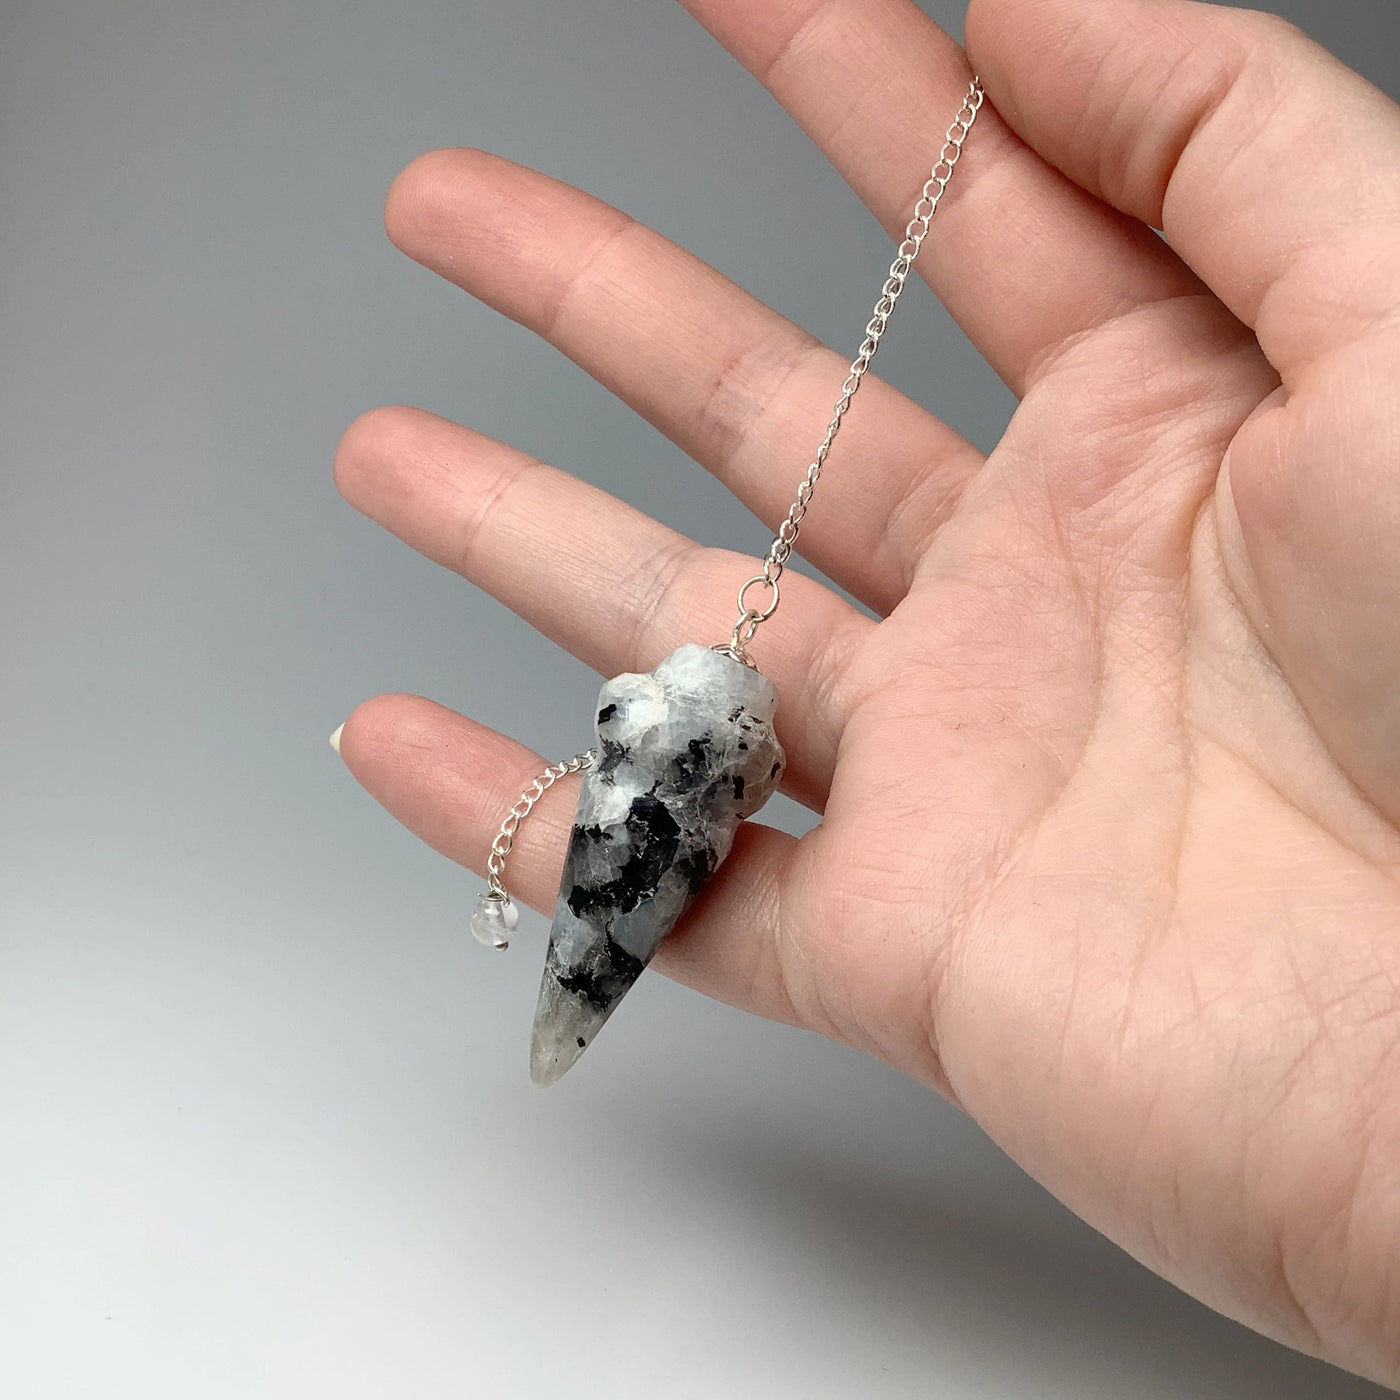 Polished Gemstone Pendulum with Quartz Bead